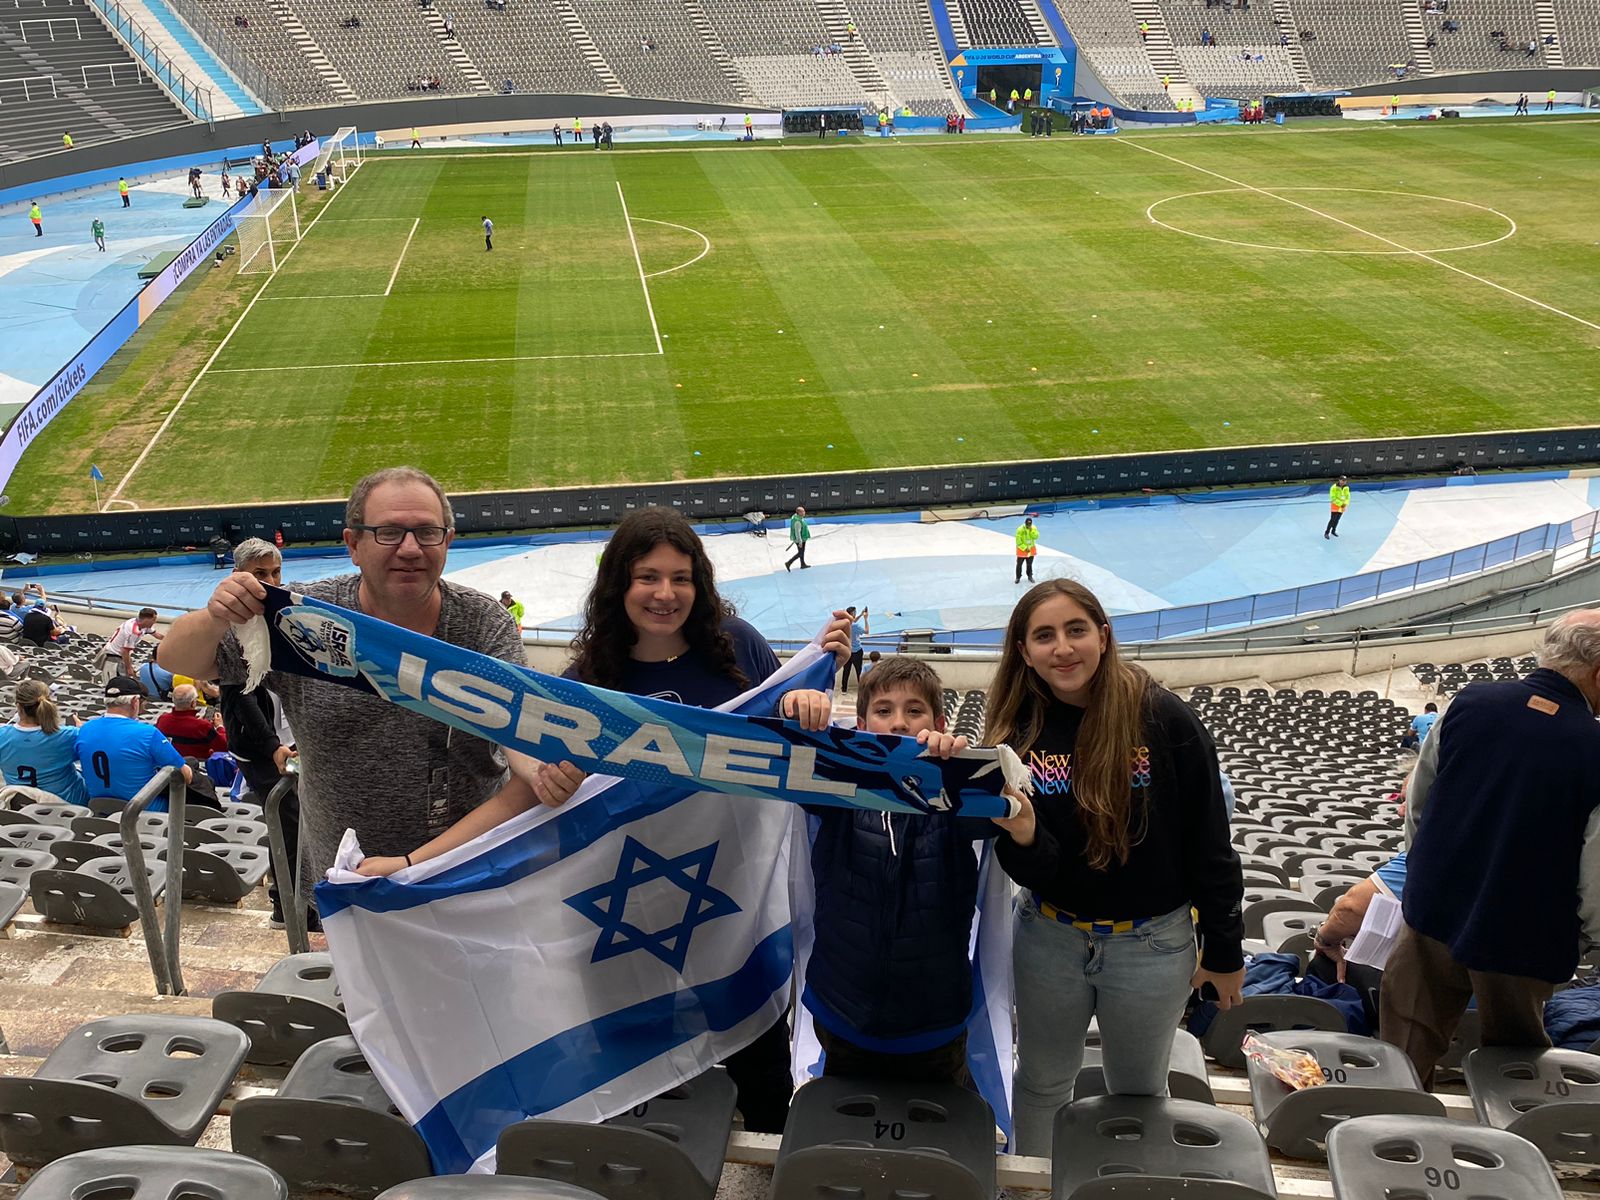 אוהדי נבחרת ישראל באצטדיון בלה פלאטה (צילום: ריקרדט סטיון)